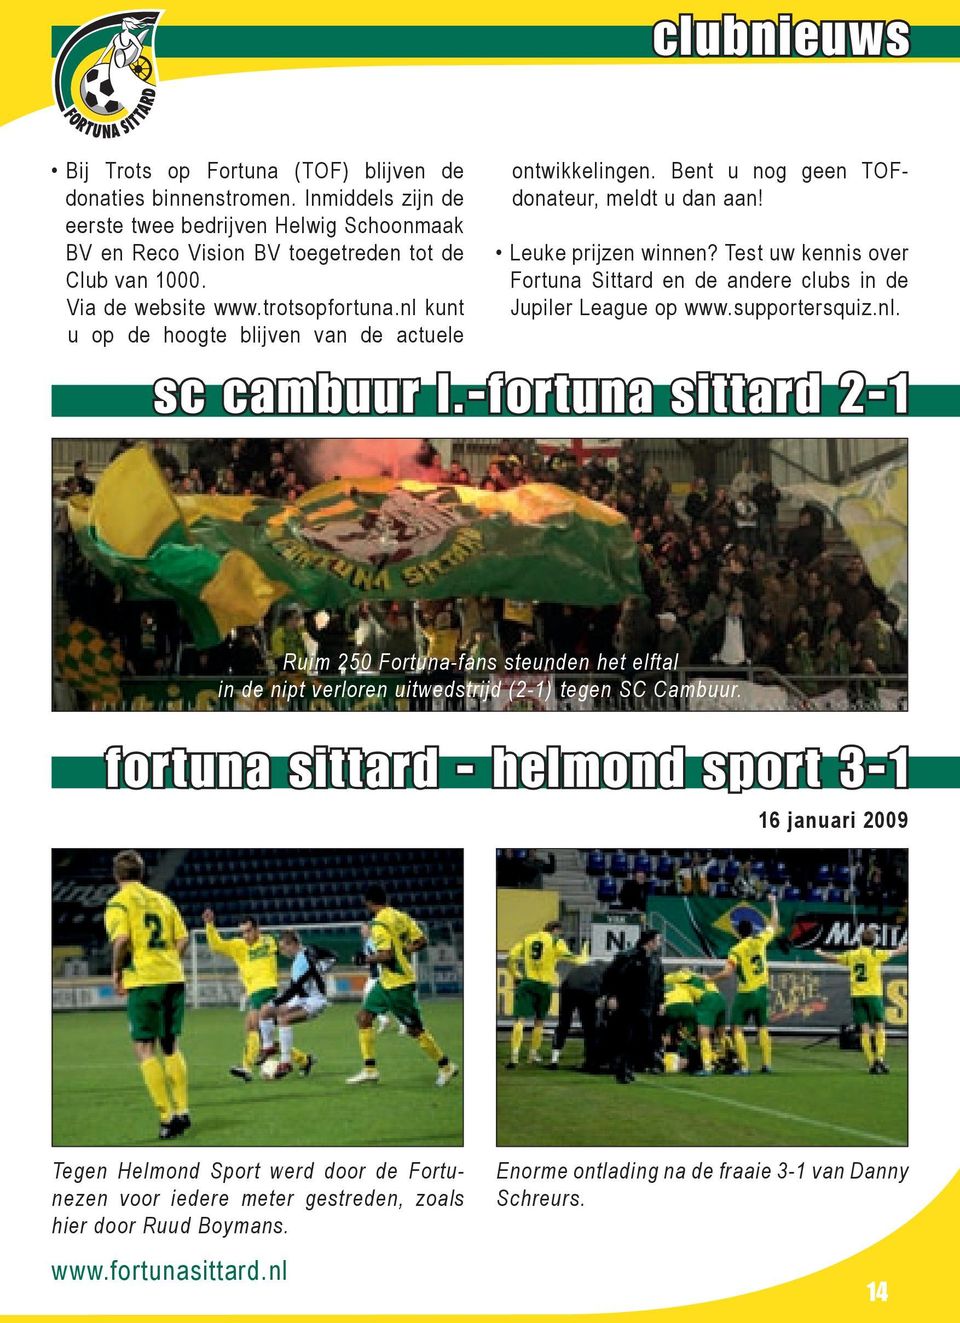 Test uw kennis over Fortuna Sittard en de andere clubs in de Jupiler League op www.supportersquiz.nl. sc cambuur l.